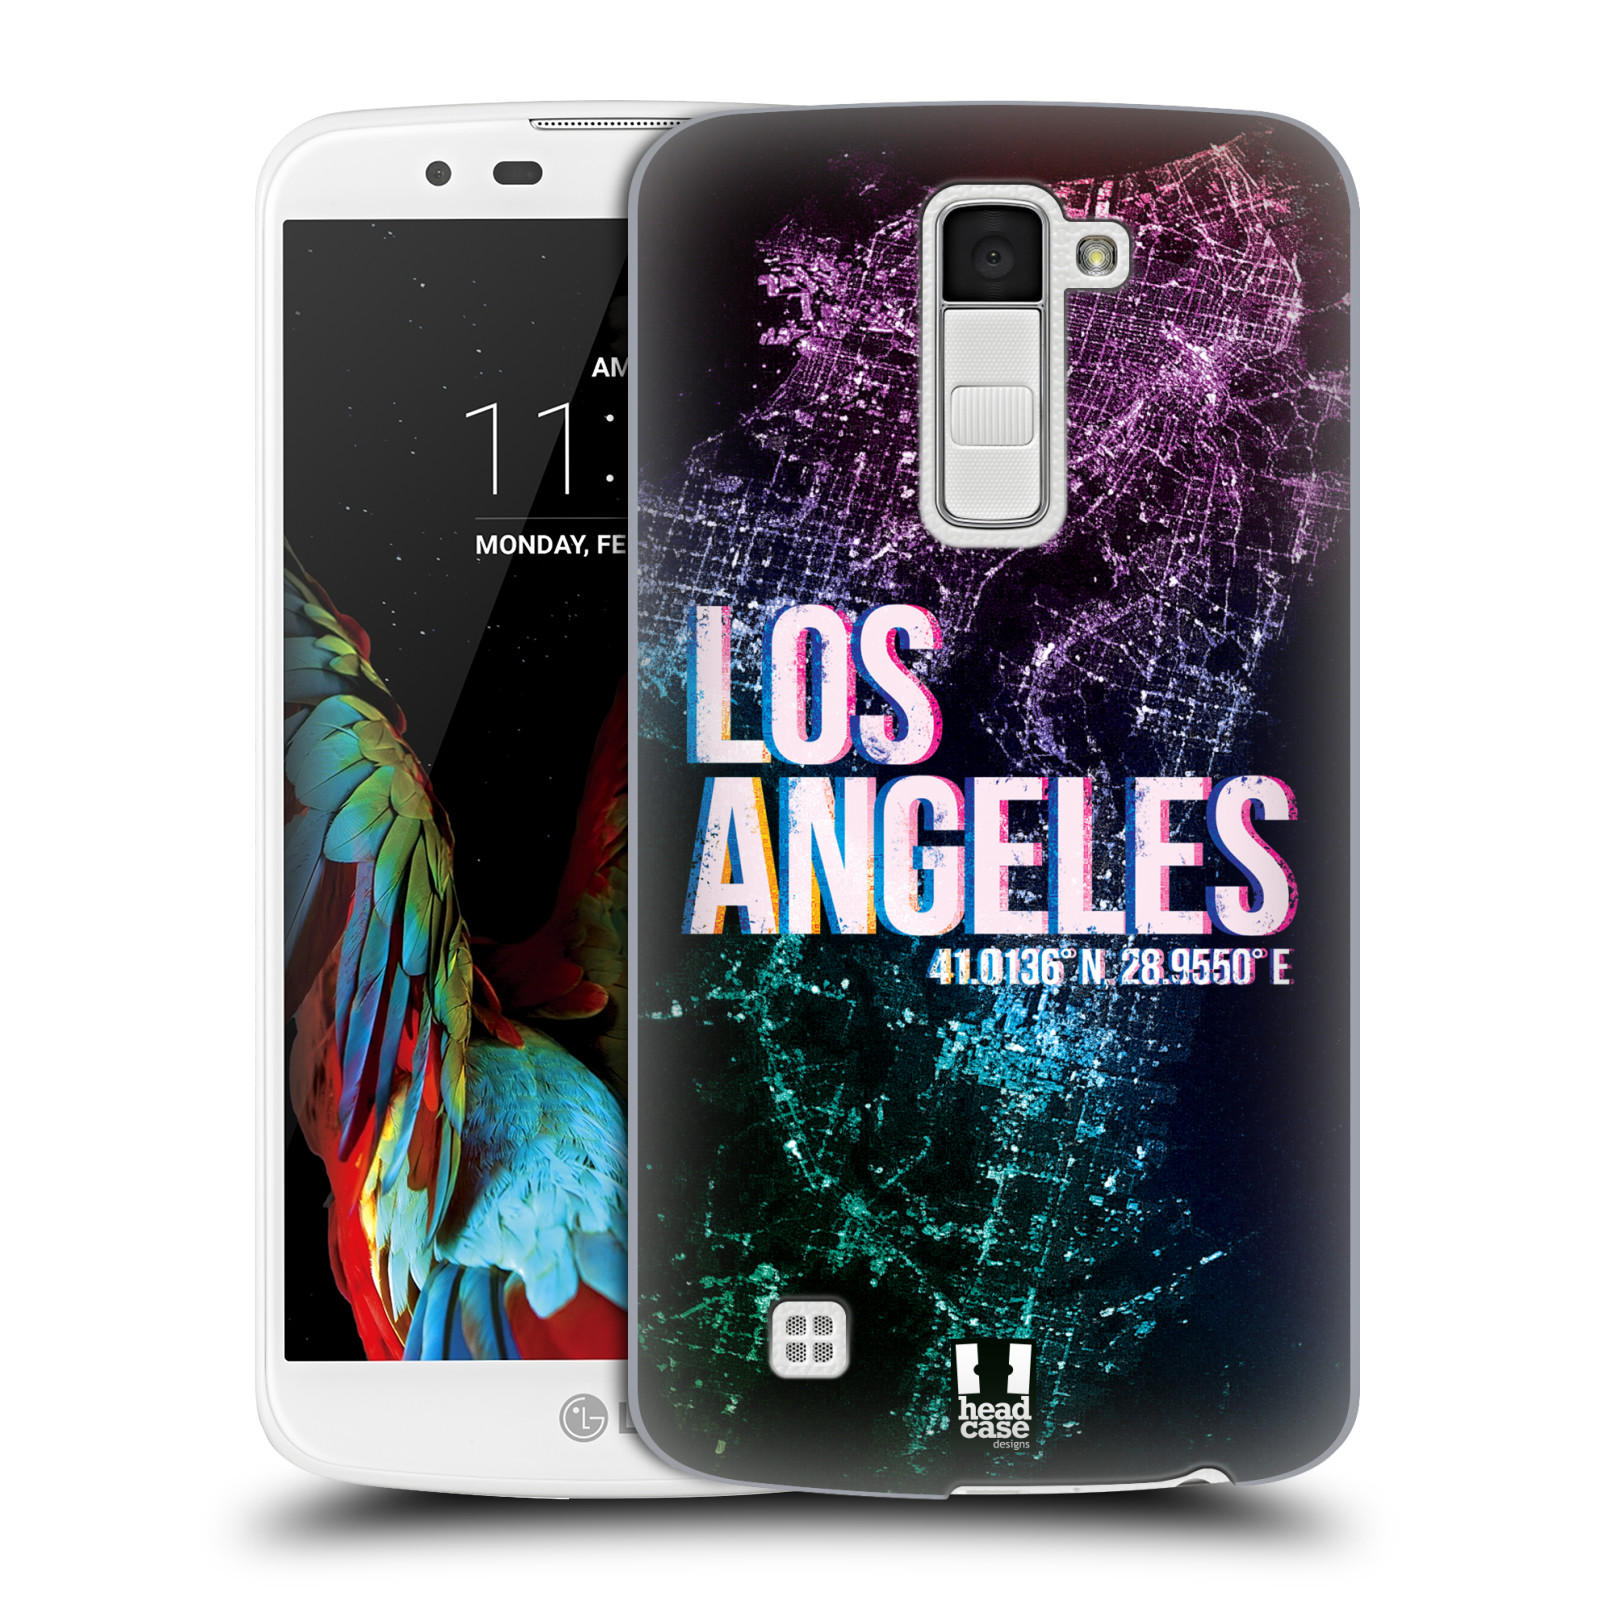 HEAD CASE plastový obal na mobil LG K10 vzor Světla známých měst, Satelitní snímky fialová USA, LOS ANGELES